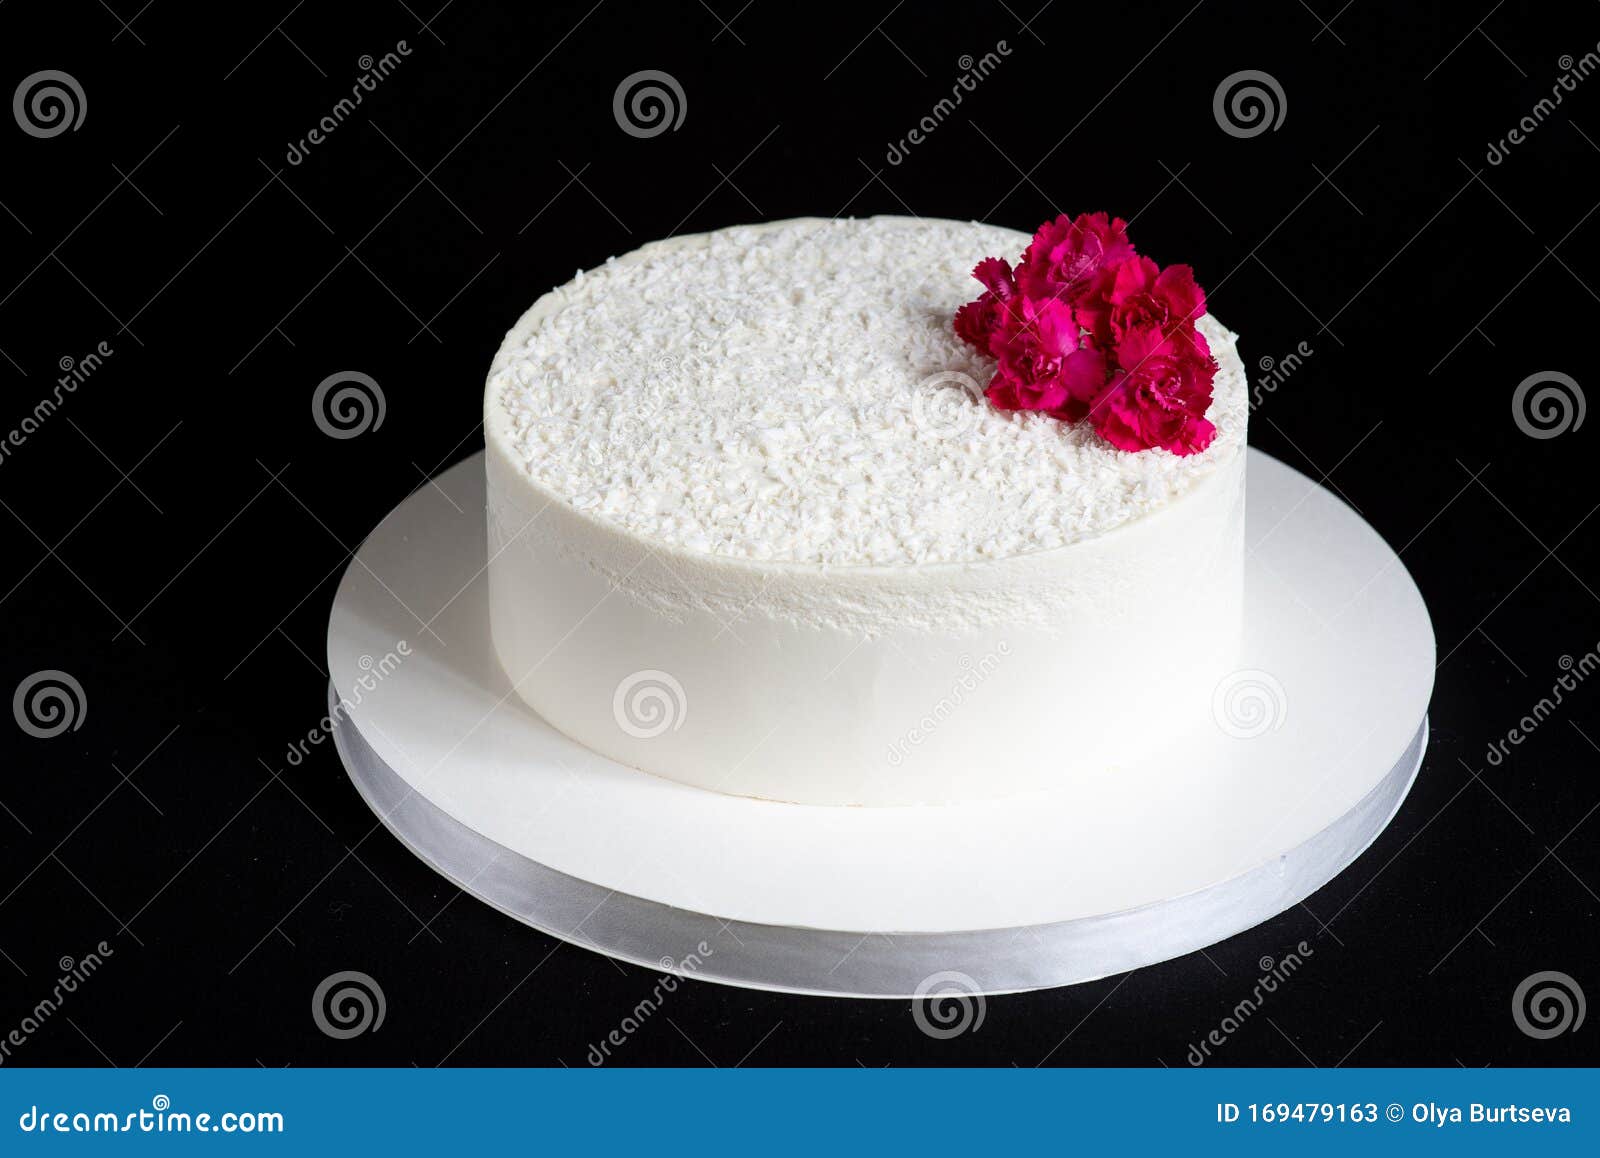 Red Apple snow white Cake, A Customize snow white cake